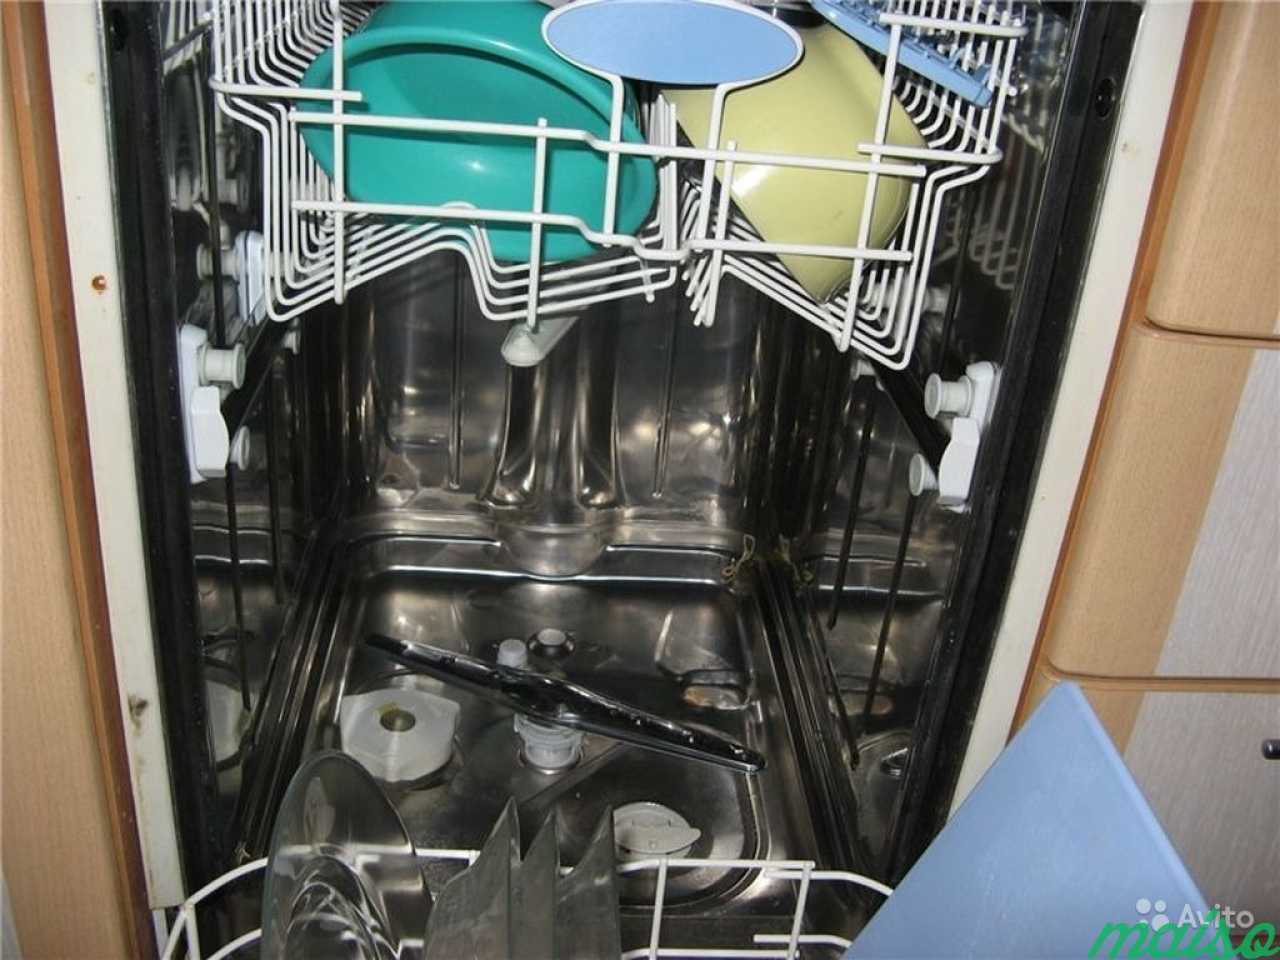 Ремонт посудомоечных машин zanussi. Посудомойка Электролюкс Wash Tech 30. Разобранная посудомоечная машина. Починка посудомоечной машины. Посудомоечная машина в разборе.